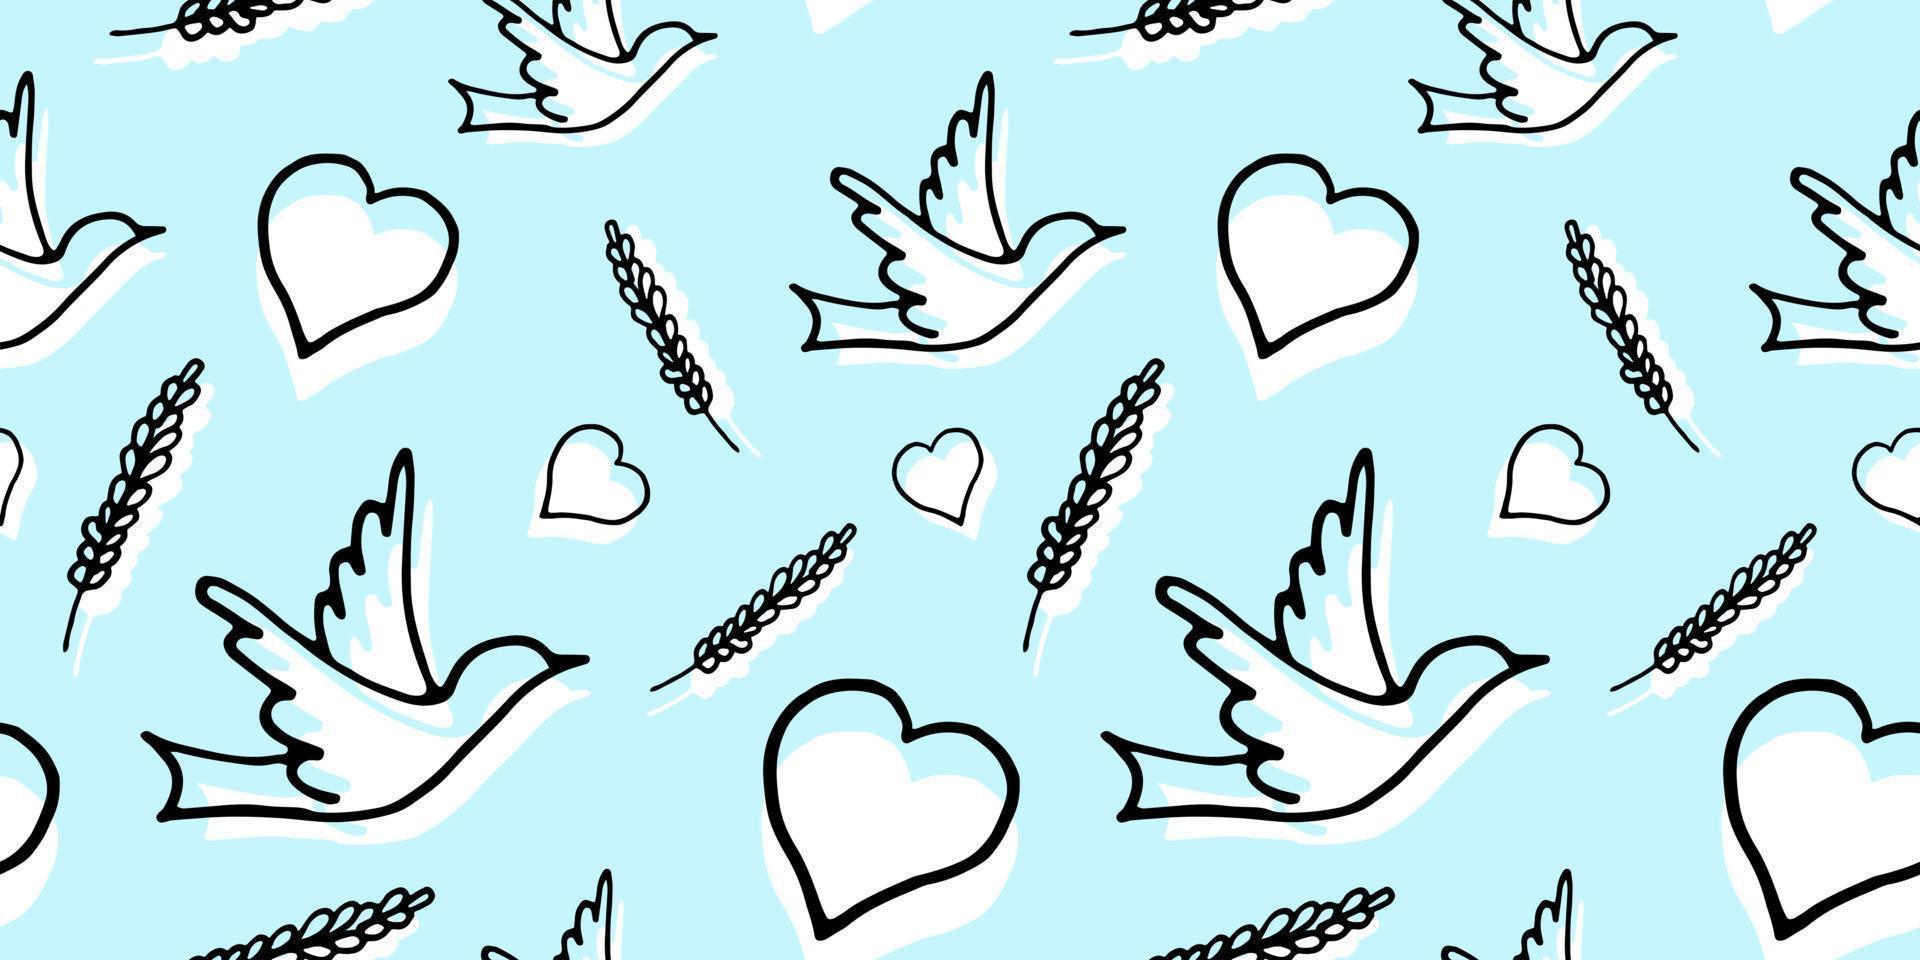 padrão perfeito com pomba, coração e trigo na ilustração vetorial de fundo azul vetor